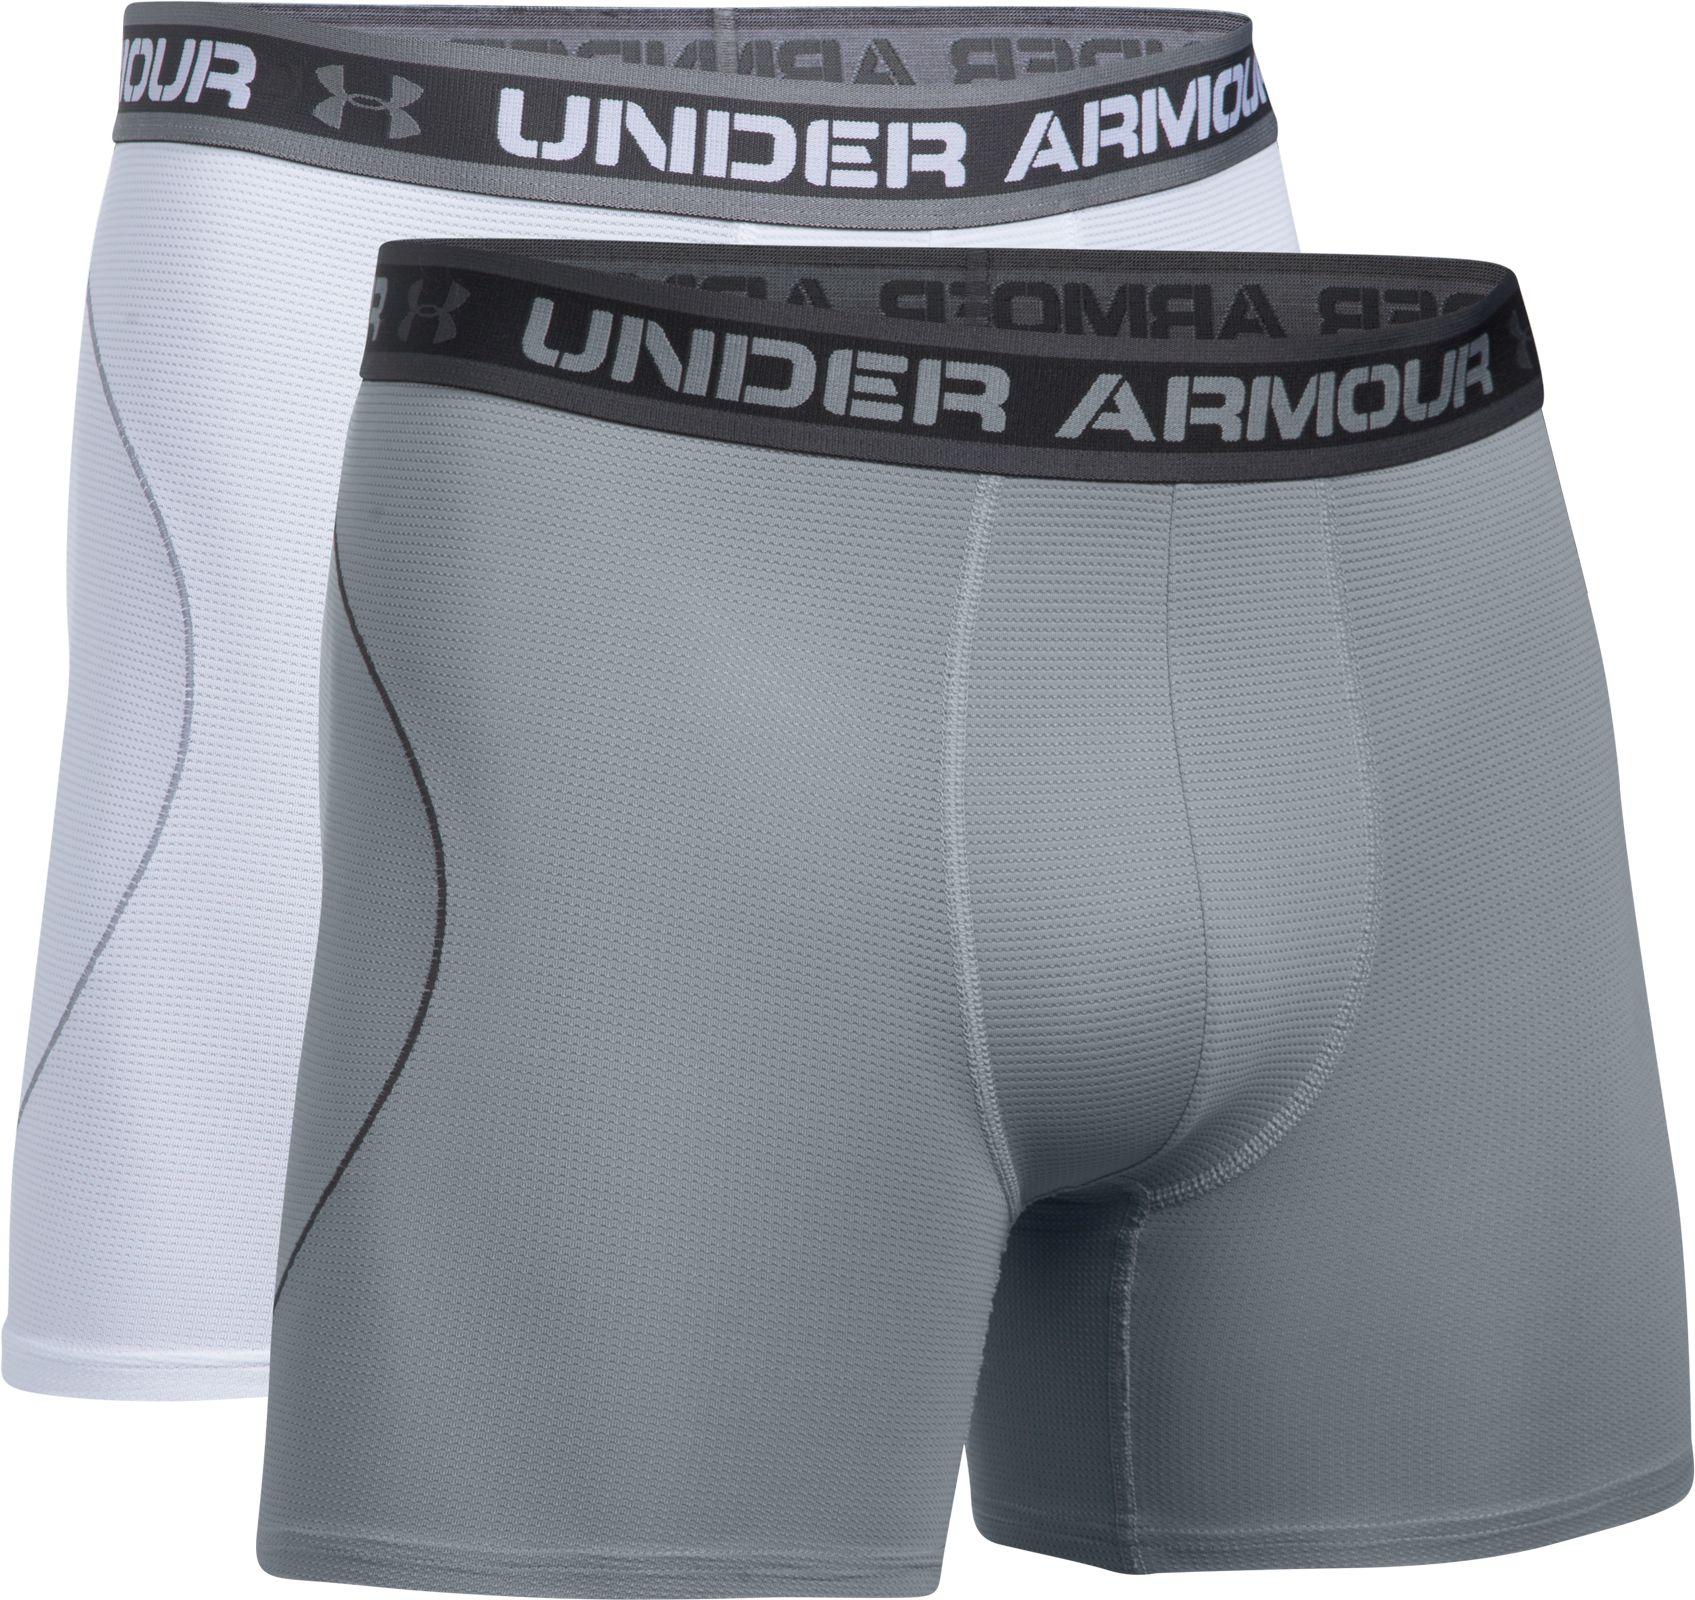 under armour microfiber underwear